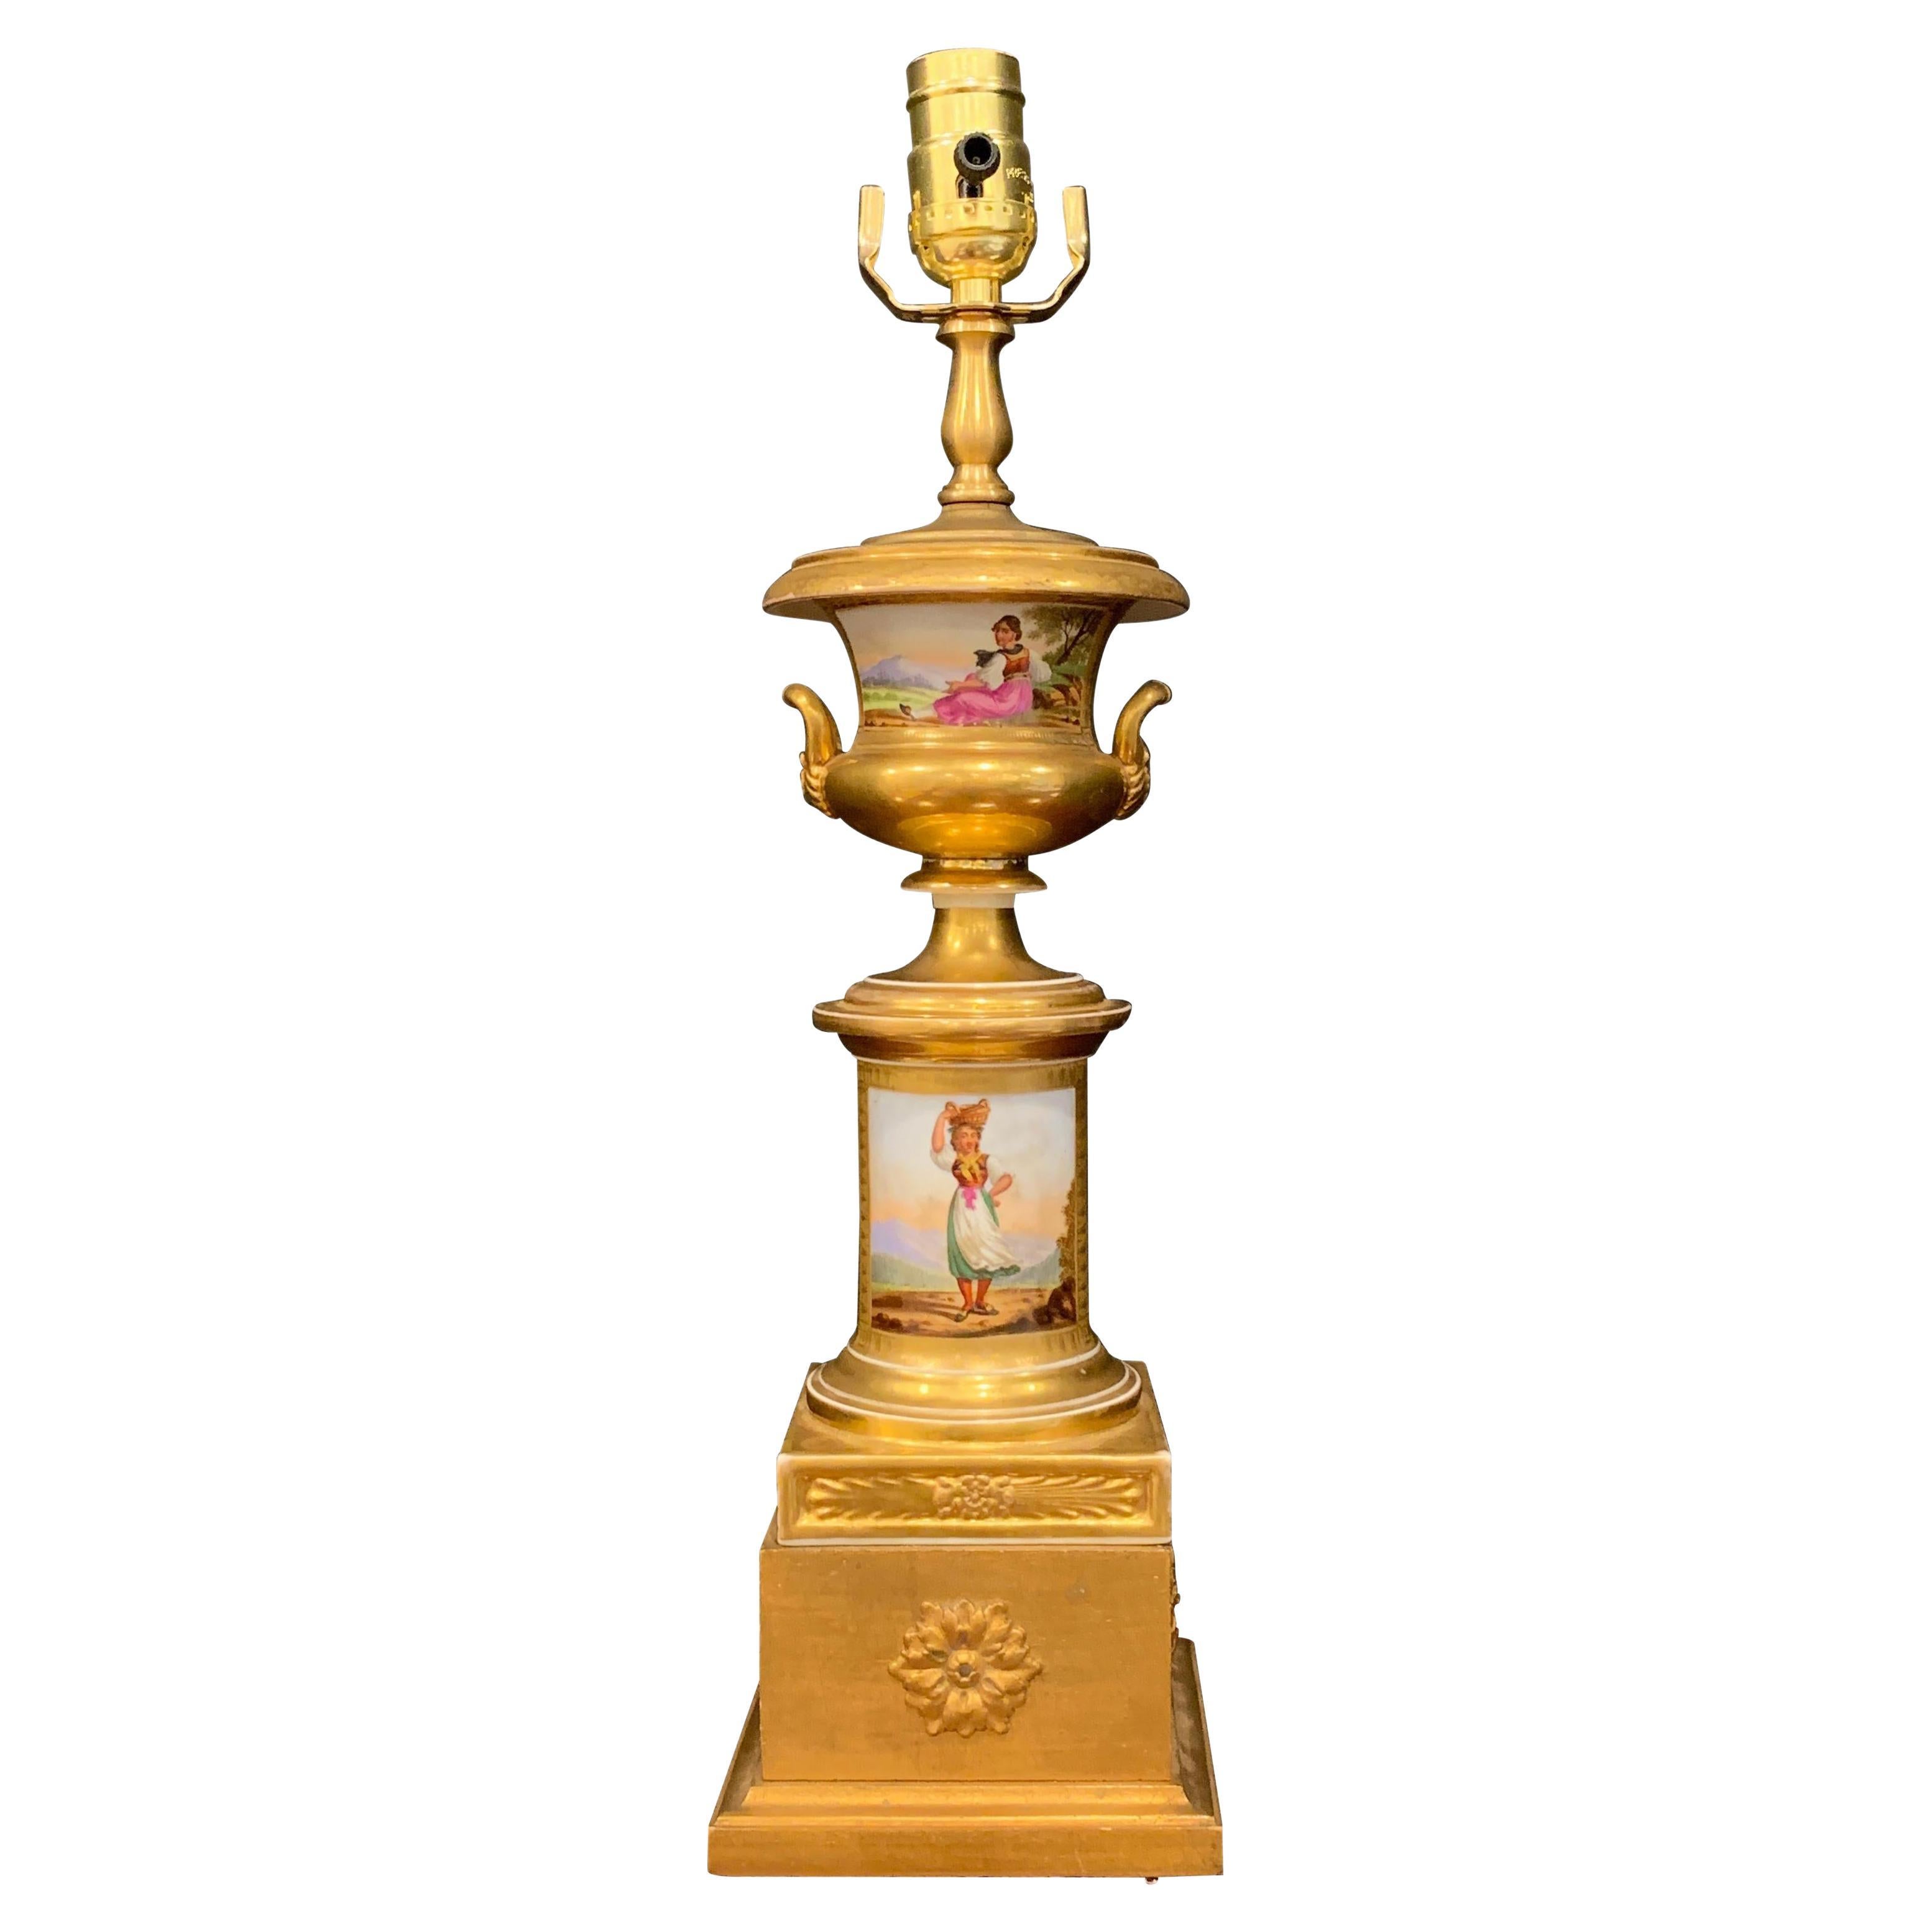 Alte Pariser Campana-Urne mit Tyrollianischem Modemotiv, jetzt als Lampe